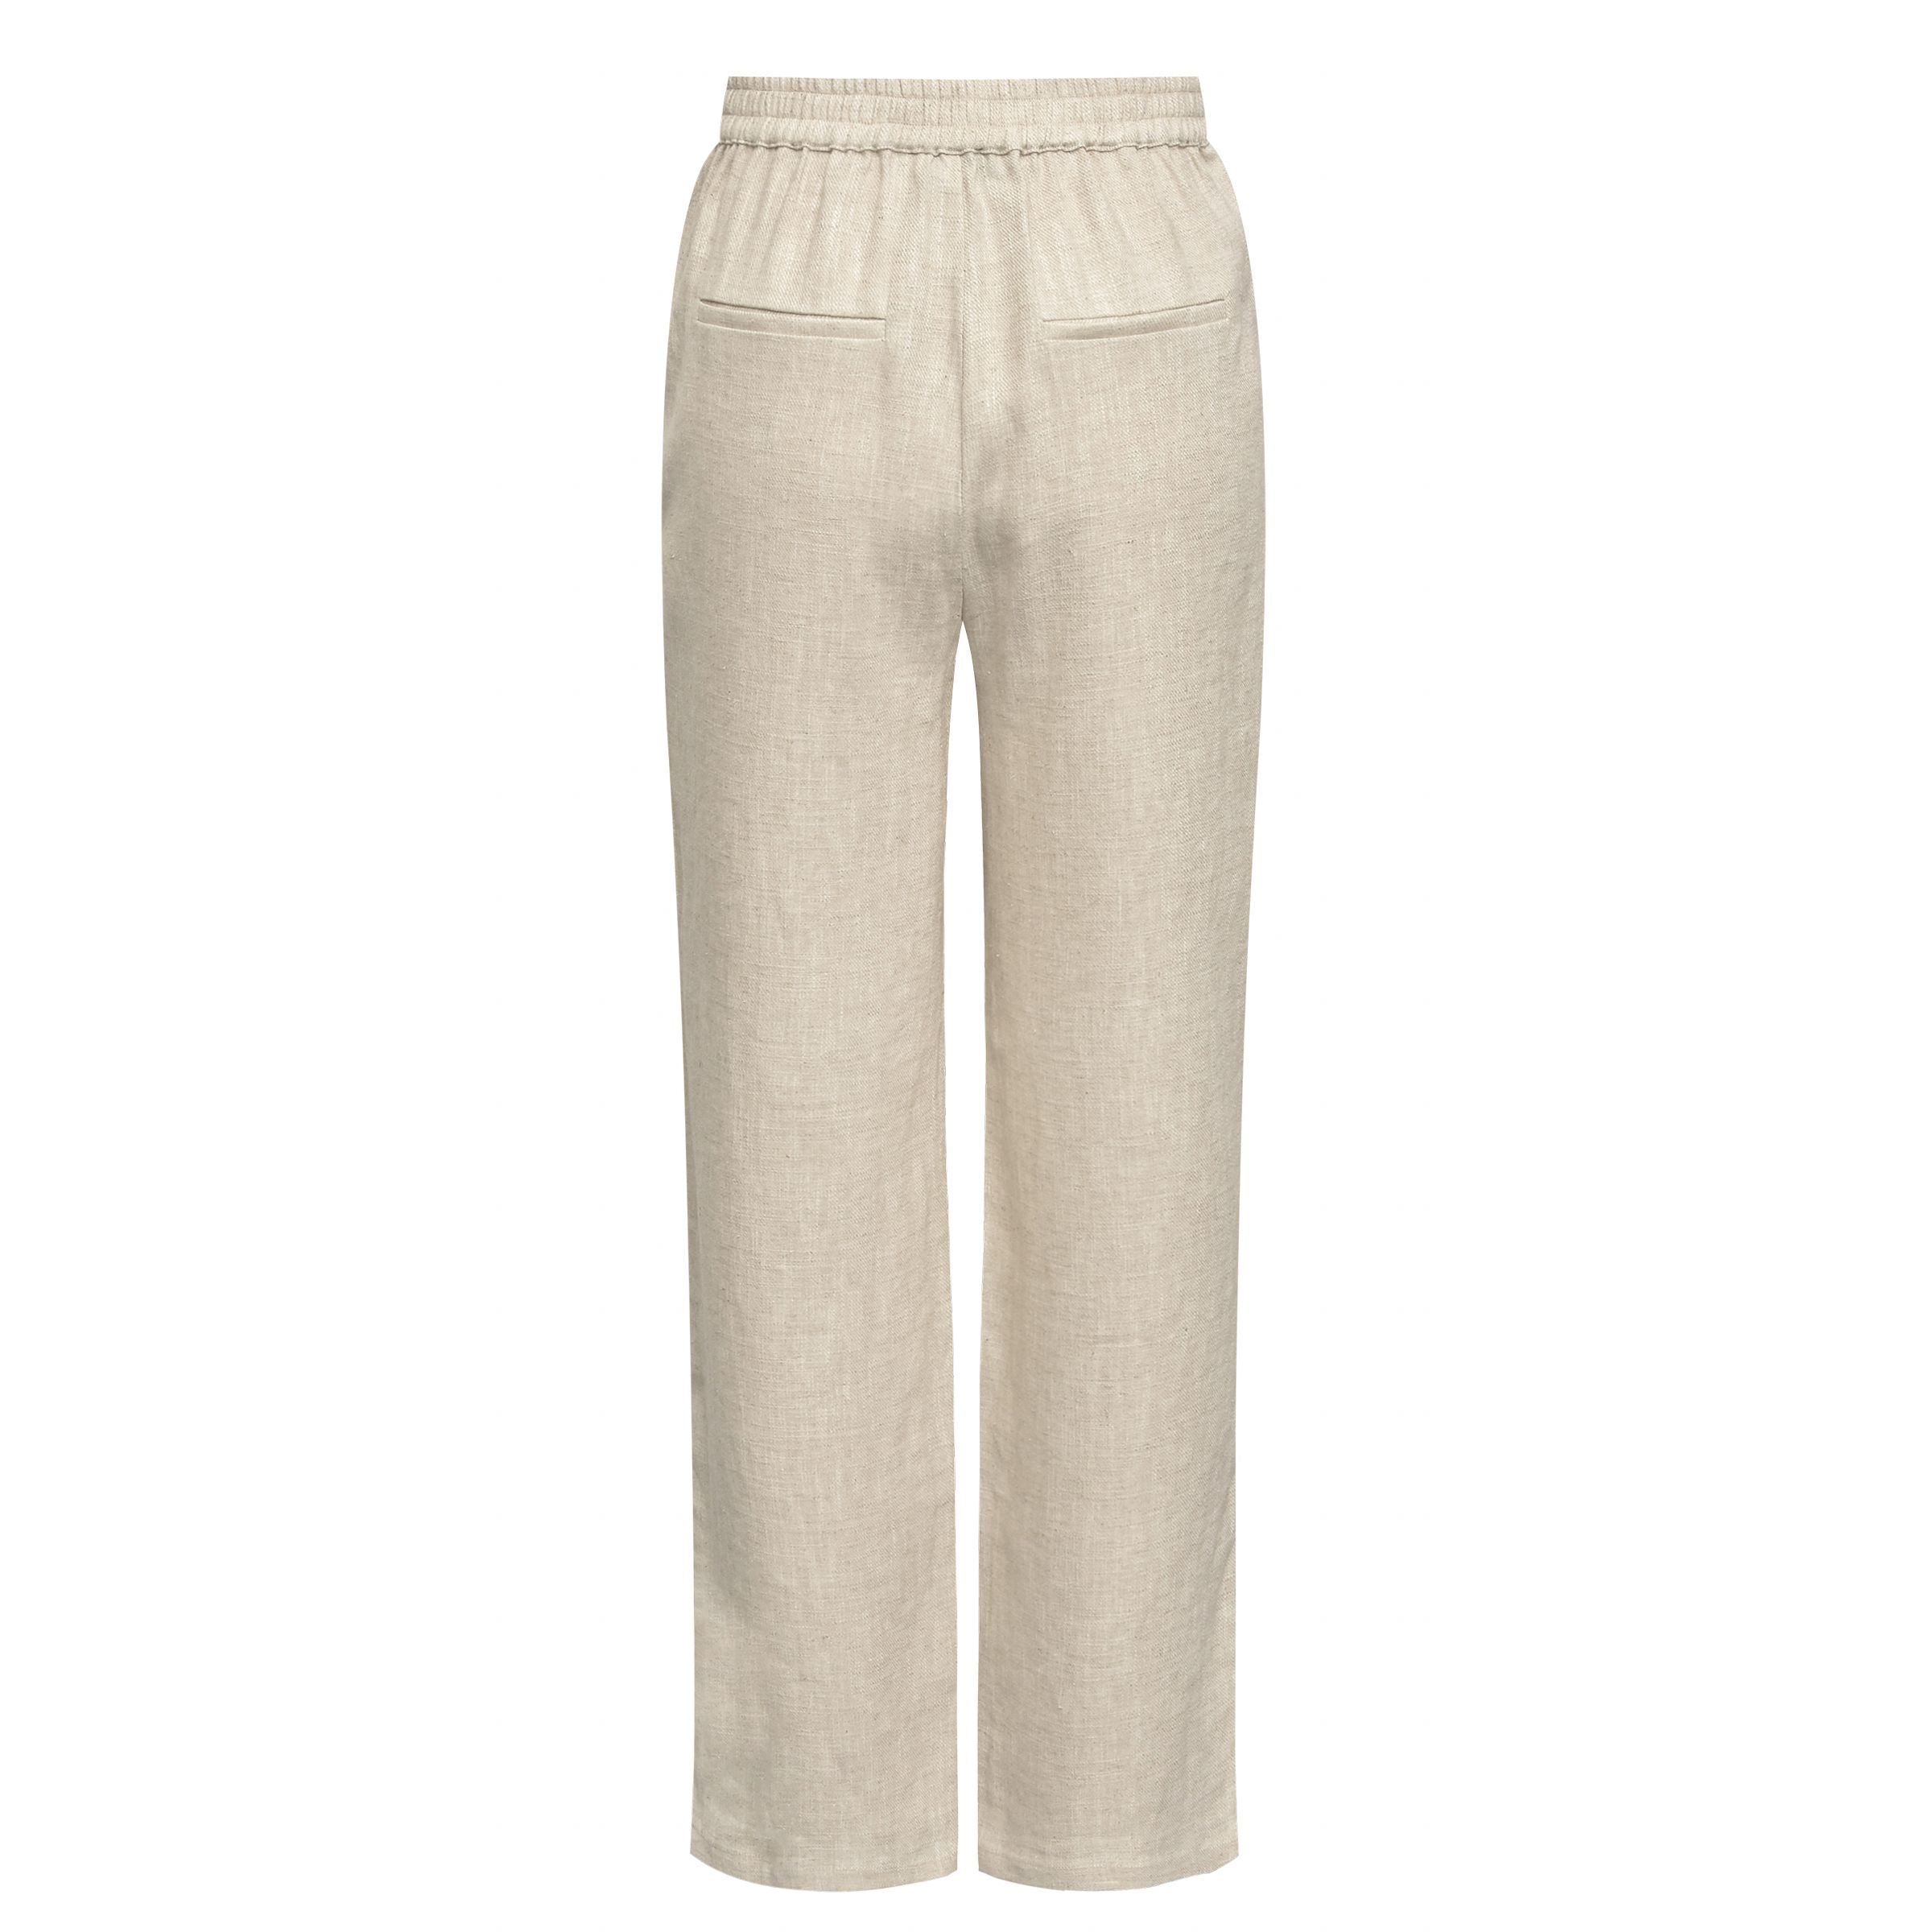 A-view - Annali linen pants, light sand by A-view | stylebykul